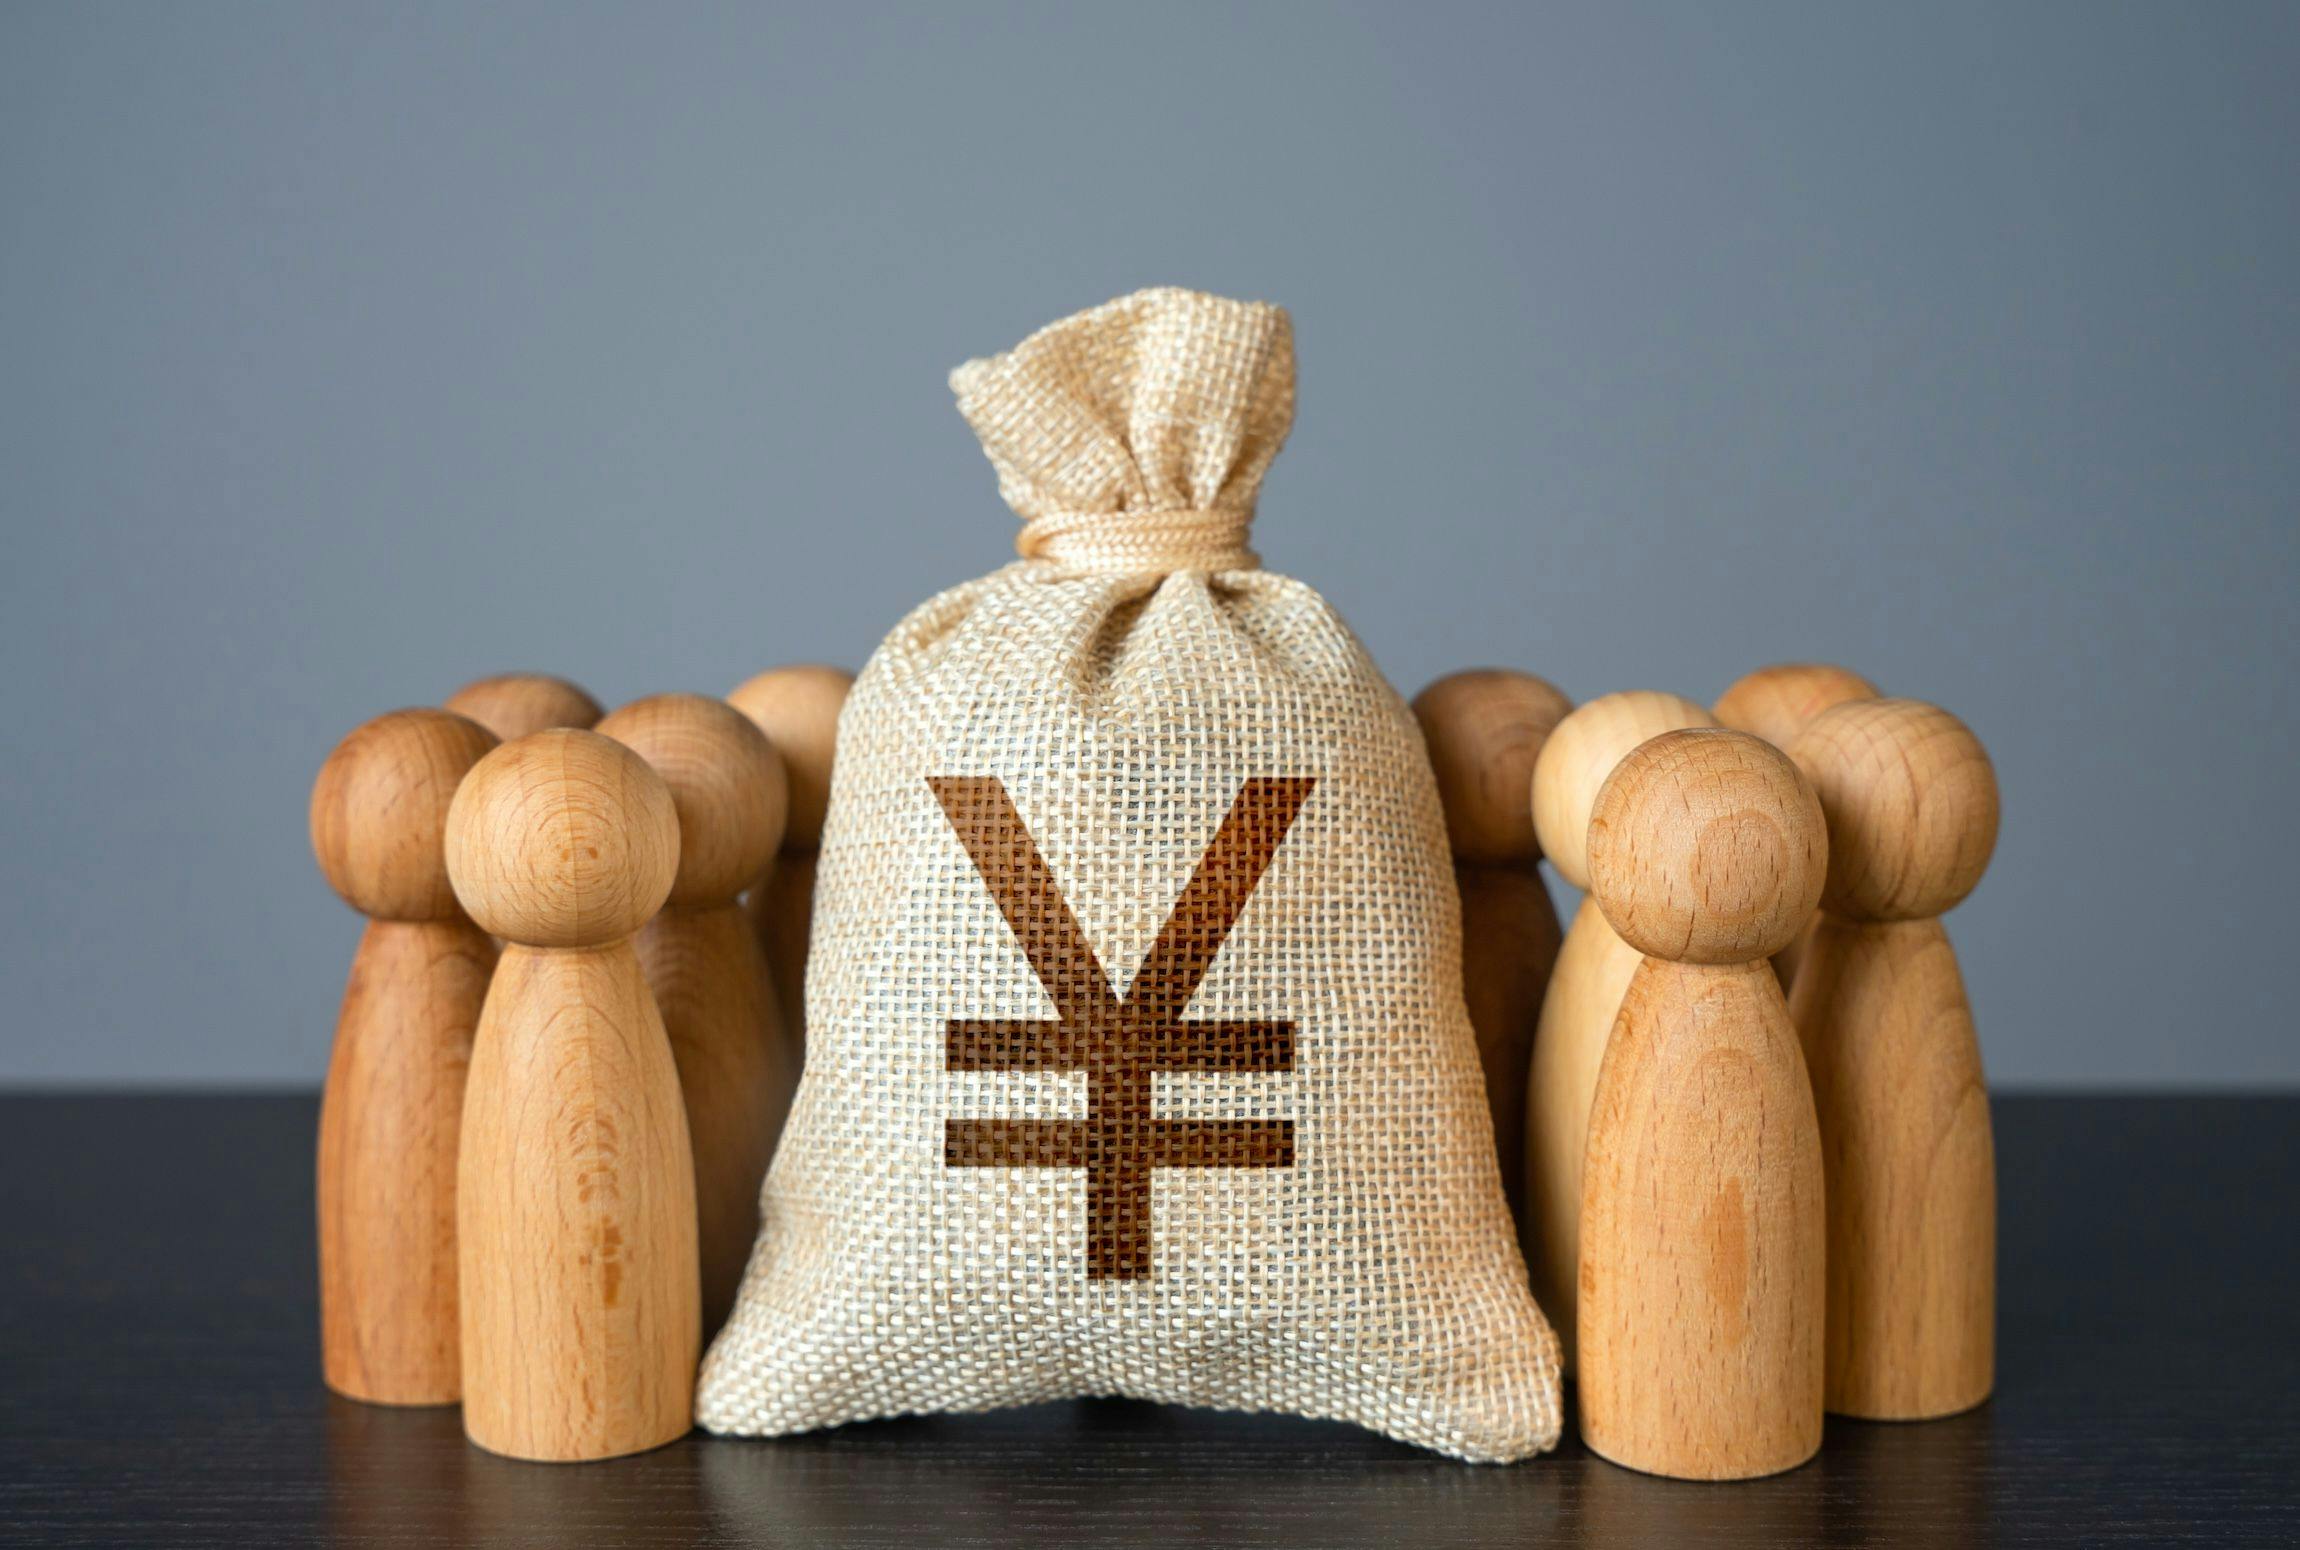 Holz Figuren in Form von Menschen stehen um einen Jutesack mit Yuan Zeichen darauf herum